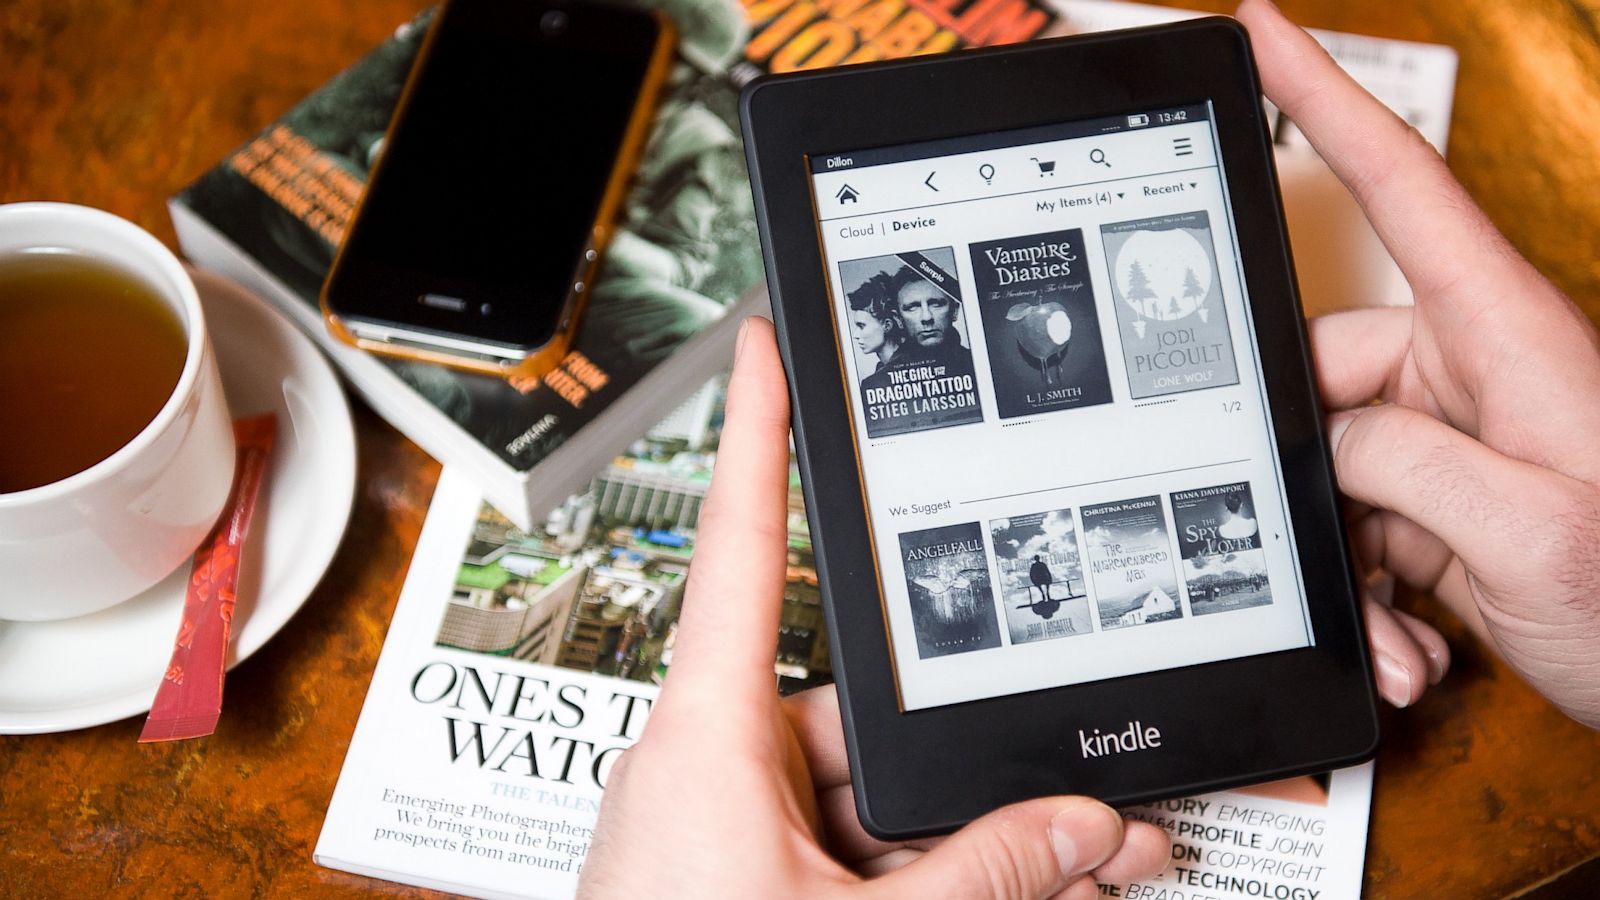 Kindle Matchbook : une copie numérique de vos livres papier pour